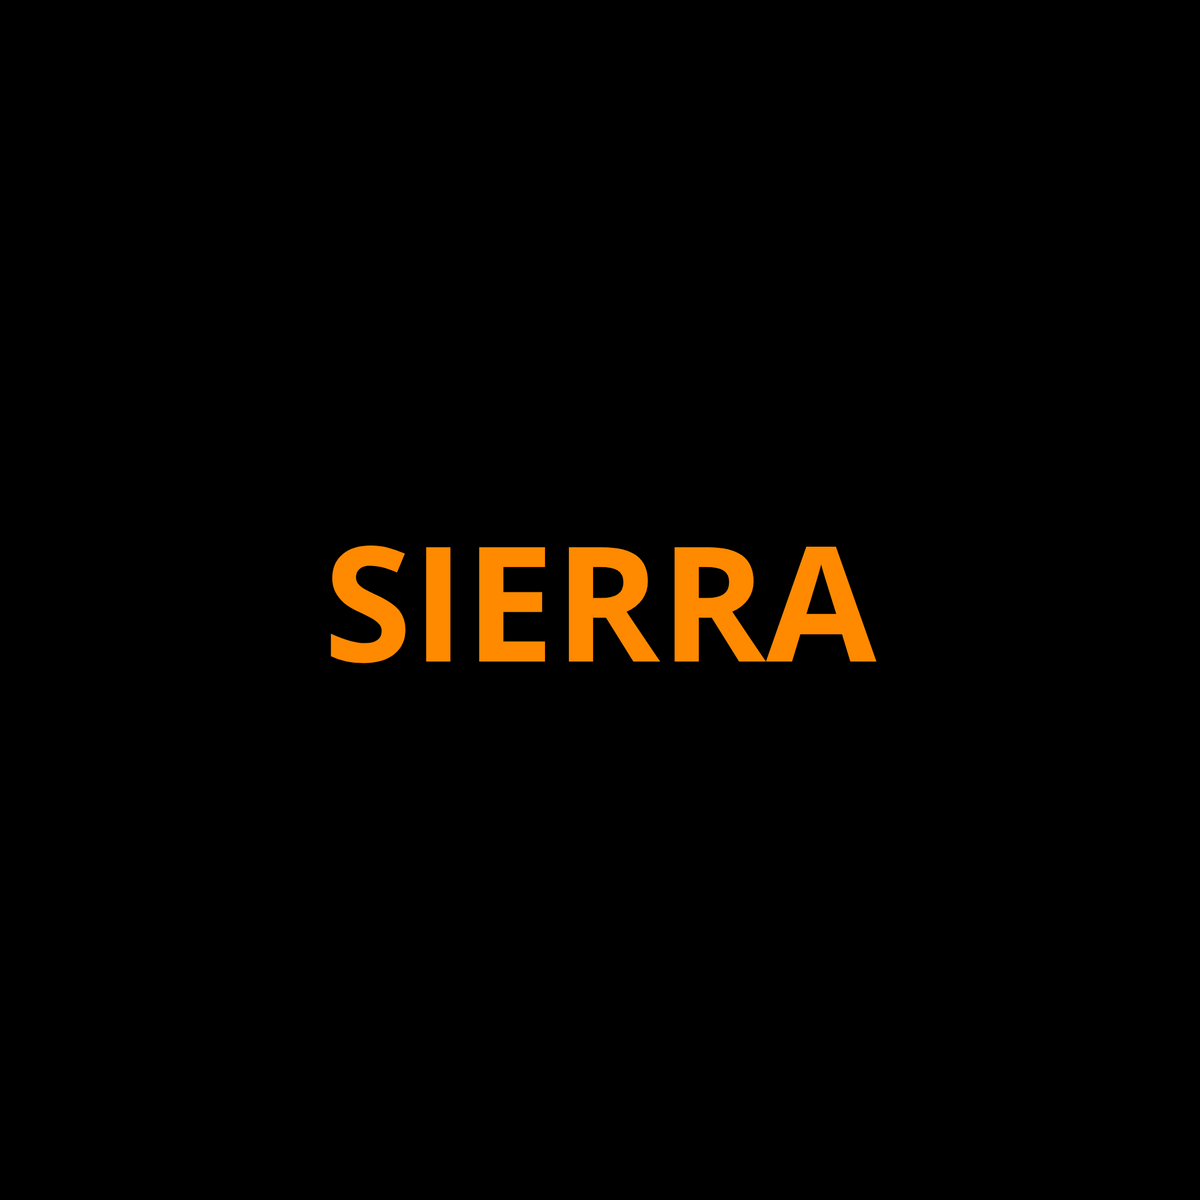 GMC Sierra Screen ProTech Kit